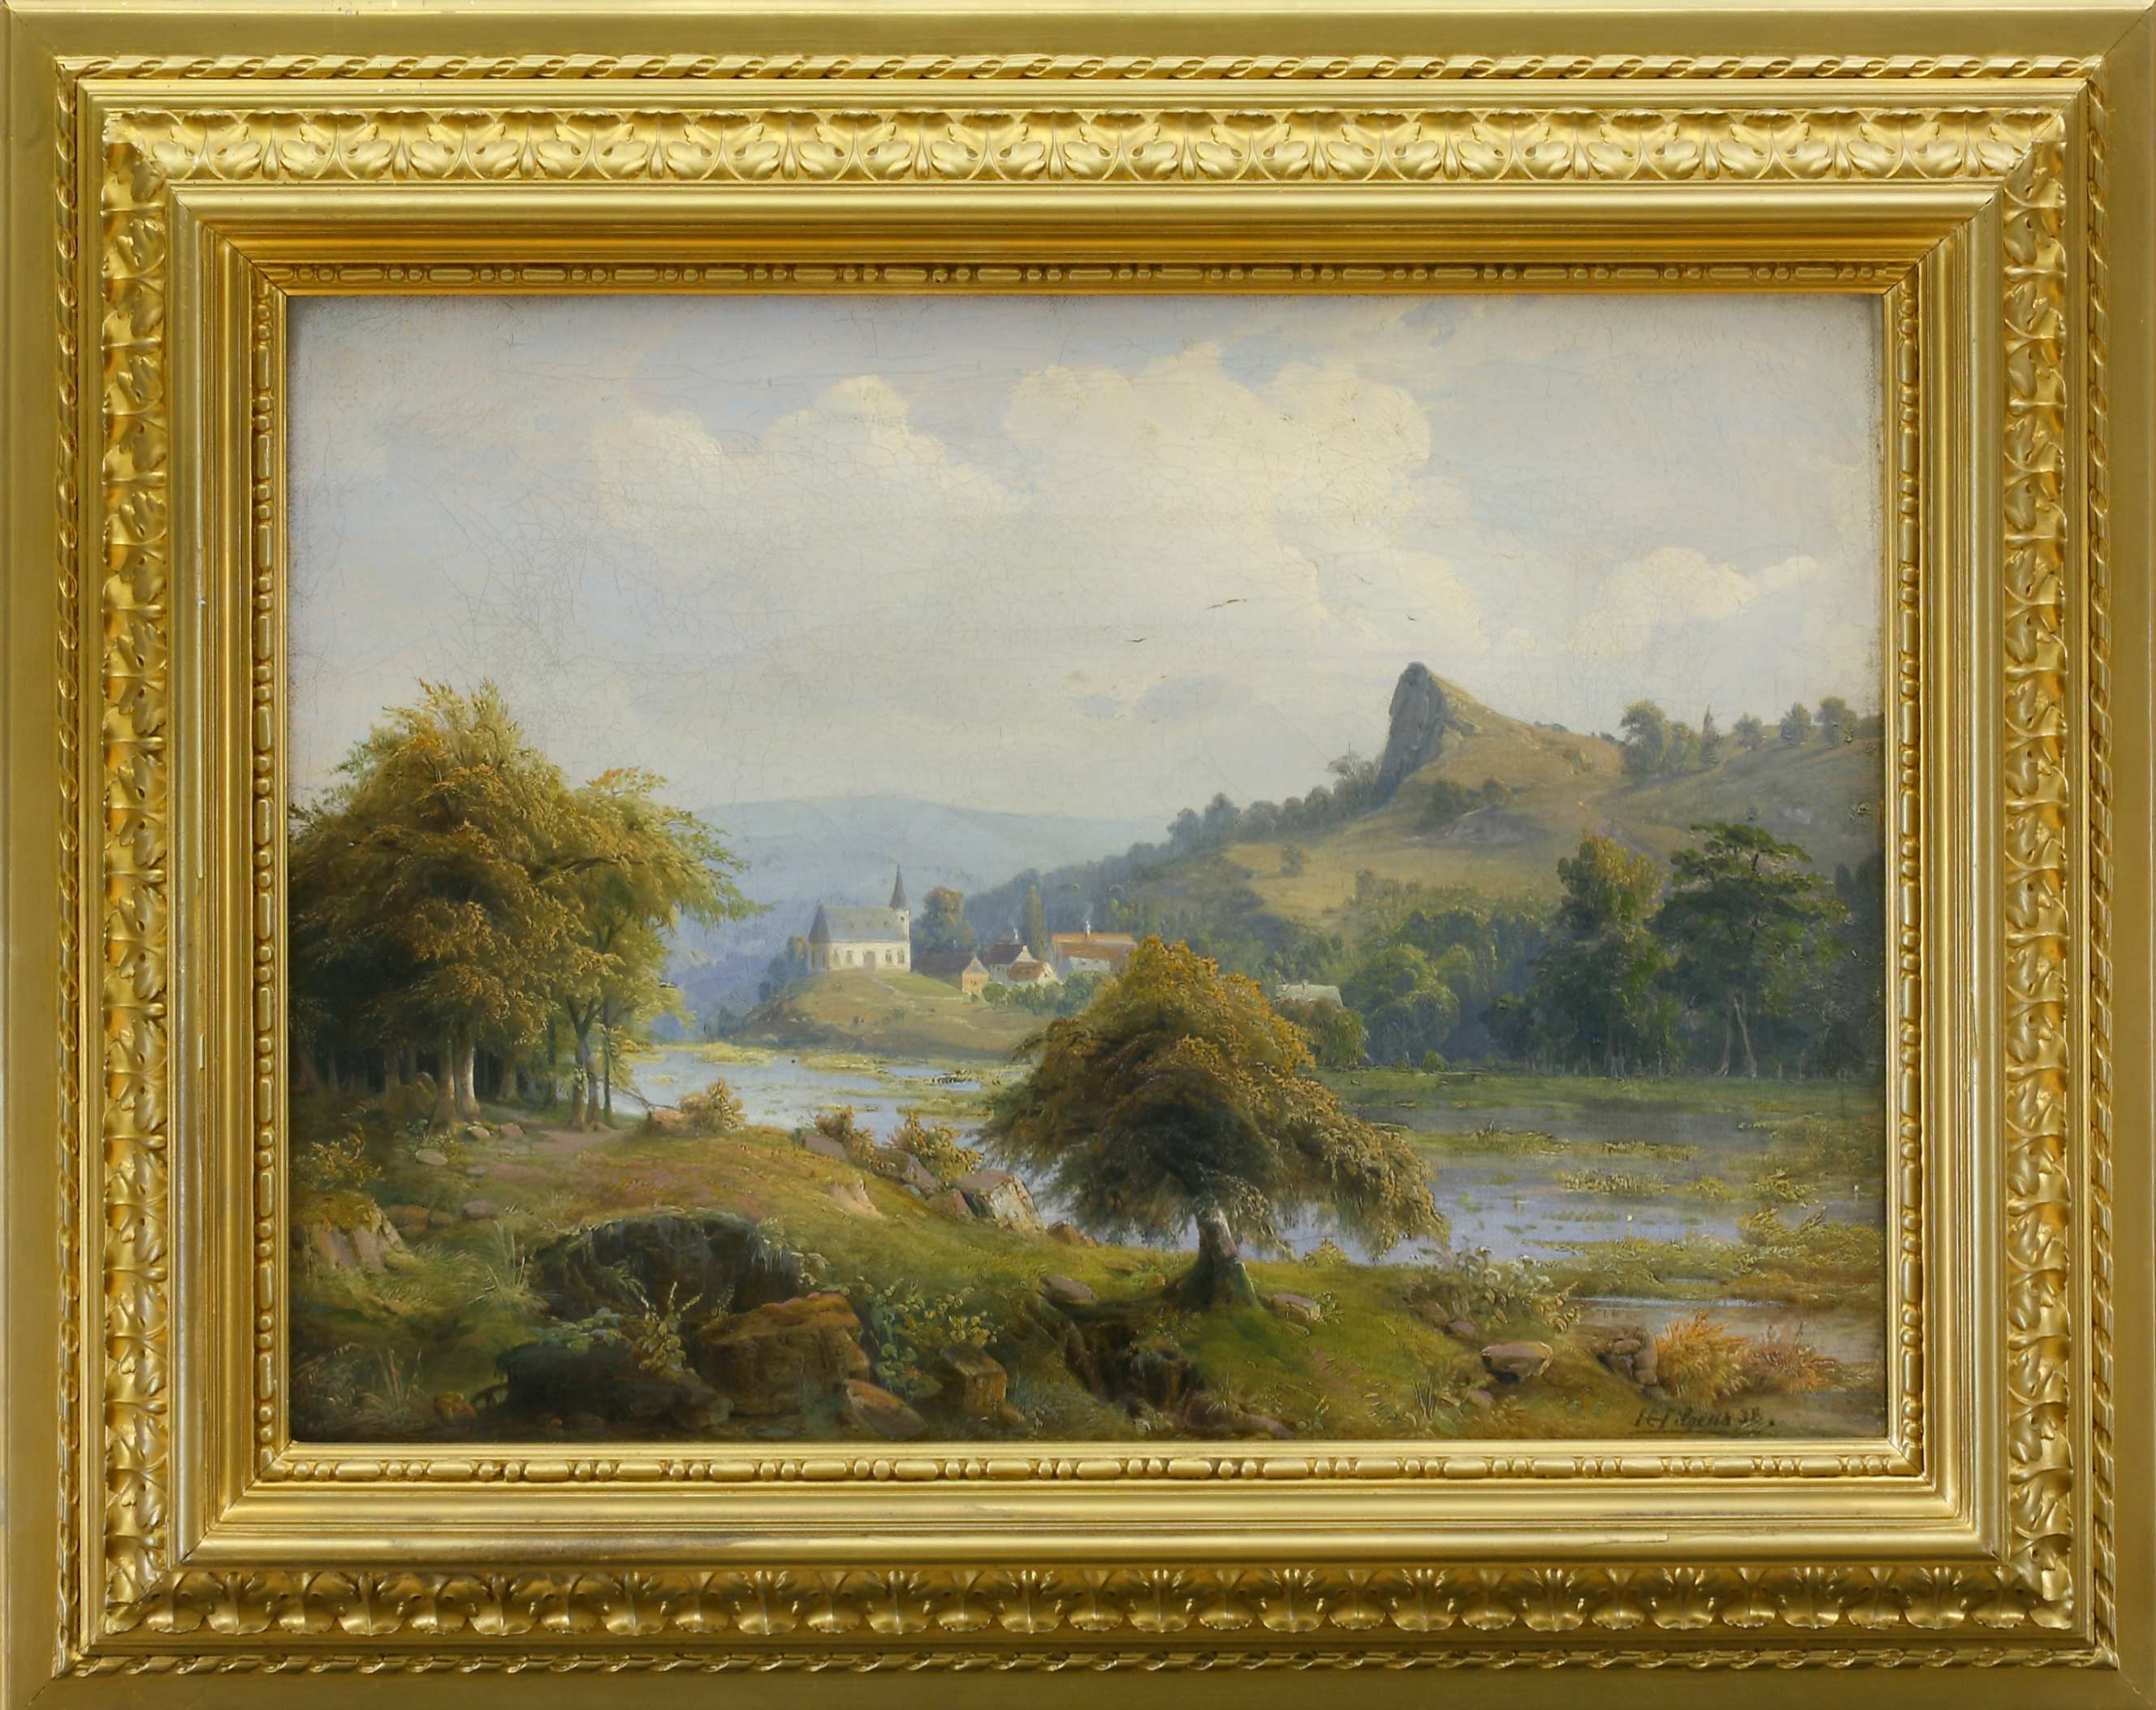 Auktionshaus Quentin Berlin  Gemälde Hilgers  Carl  Flusslandschaft mit Berg  BÃ¤umen und Kirche. (18)38